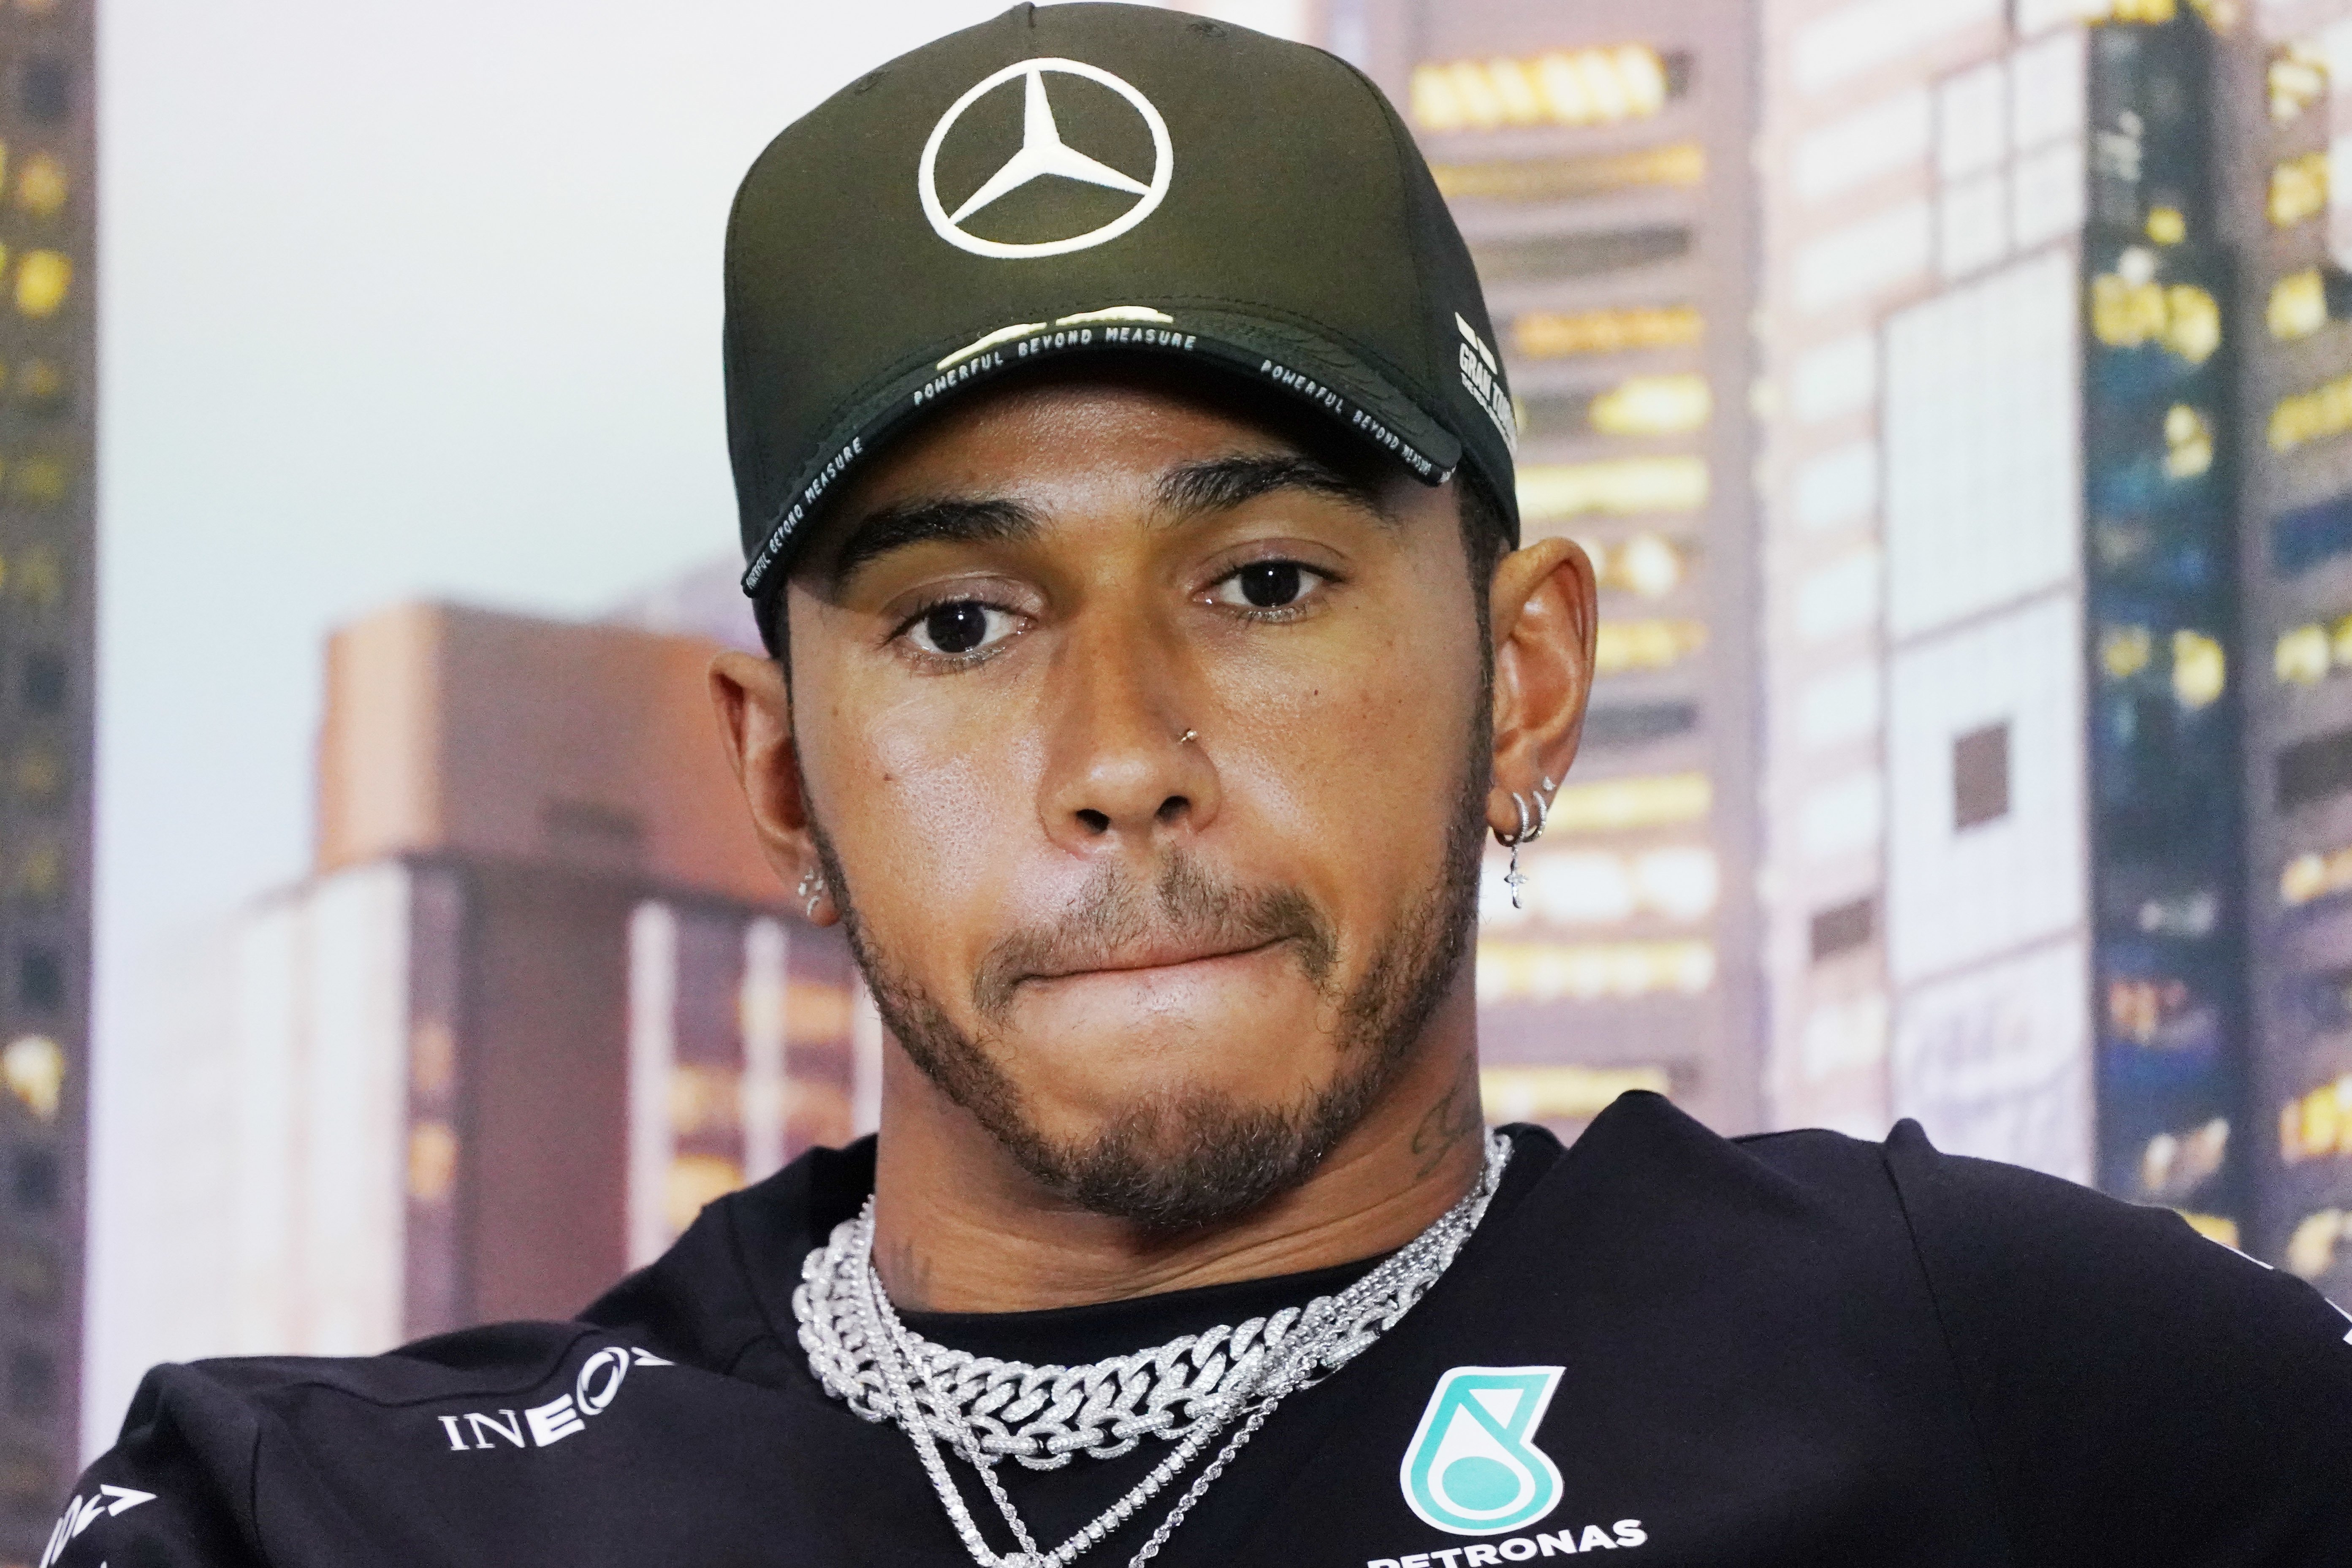 El duríssim missatge de Hamilton a la F1 sobre la mort de Floyd: "Estic sol"